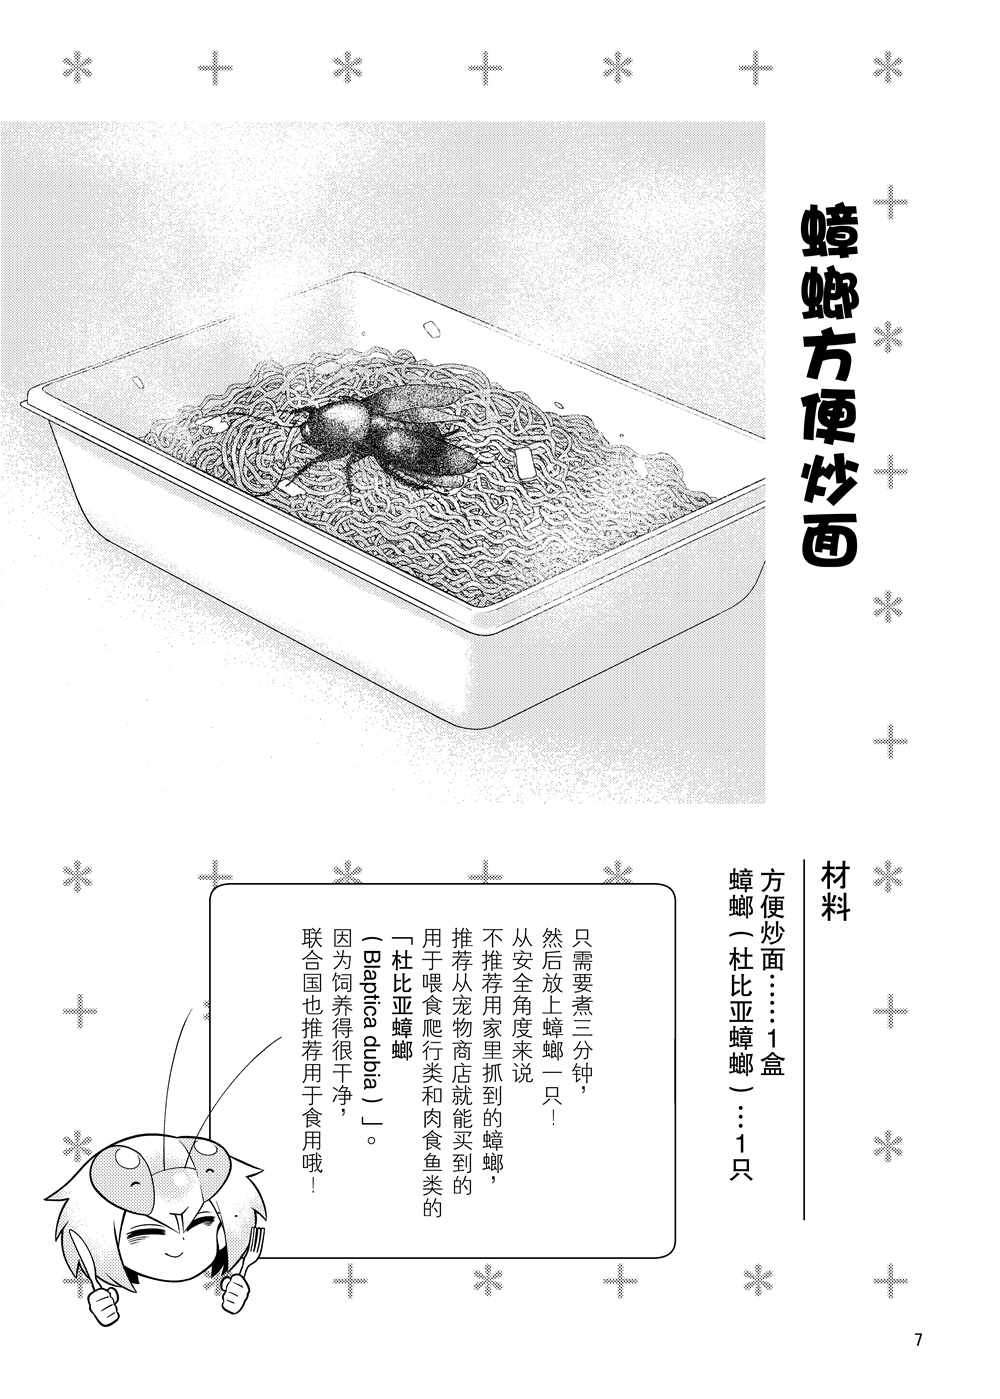 肉食JK Mantis秋山~蟲蟲料理研究部~ - 同人本1 - 1